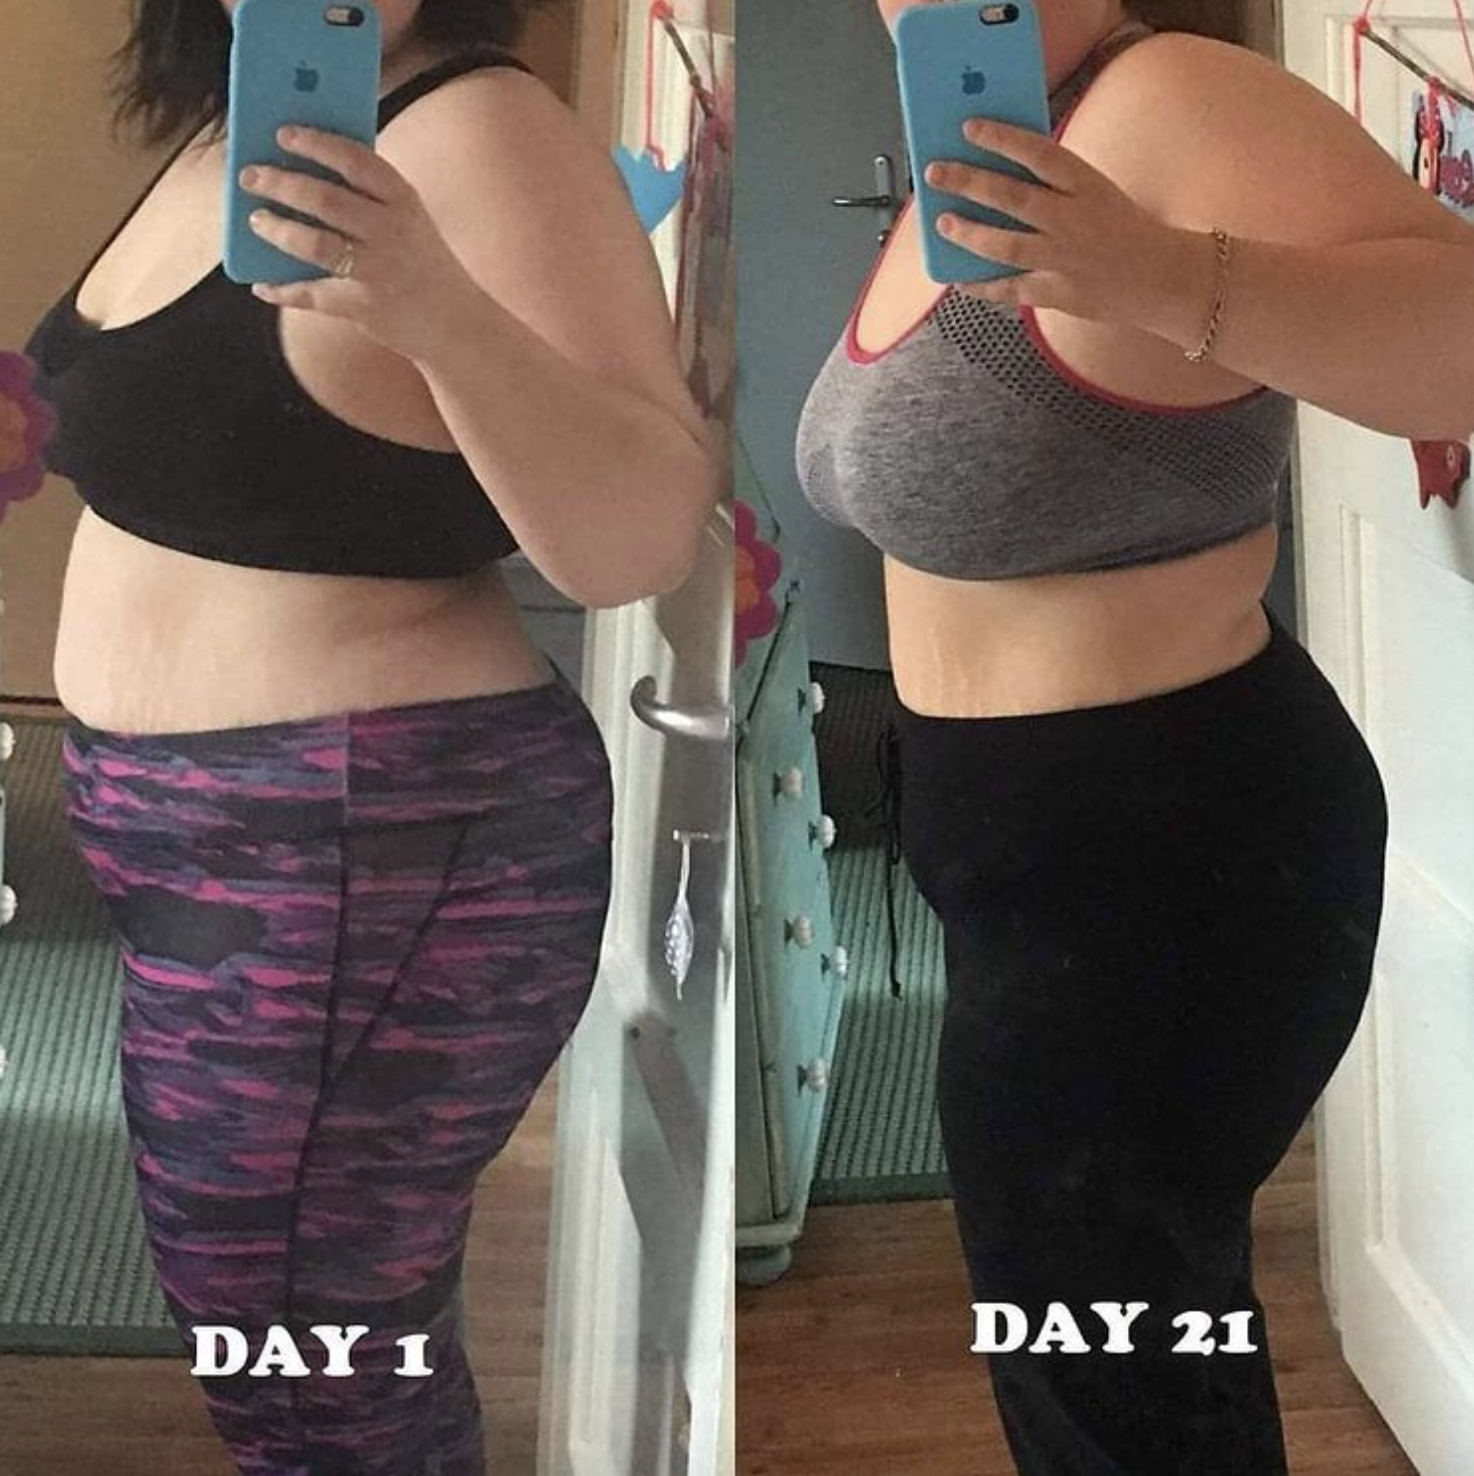 bài tập của Chloe Ting 2 tuần đốt bao nhiêu calo, abs, lịch, weeks, dưới, các, challenge, có hiệu quả không, review, giảm mỡ bụng